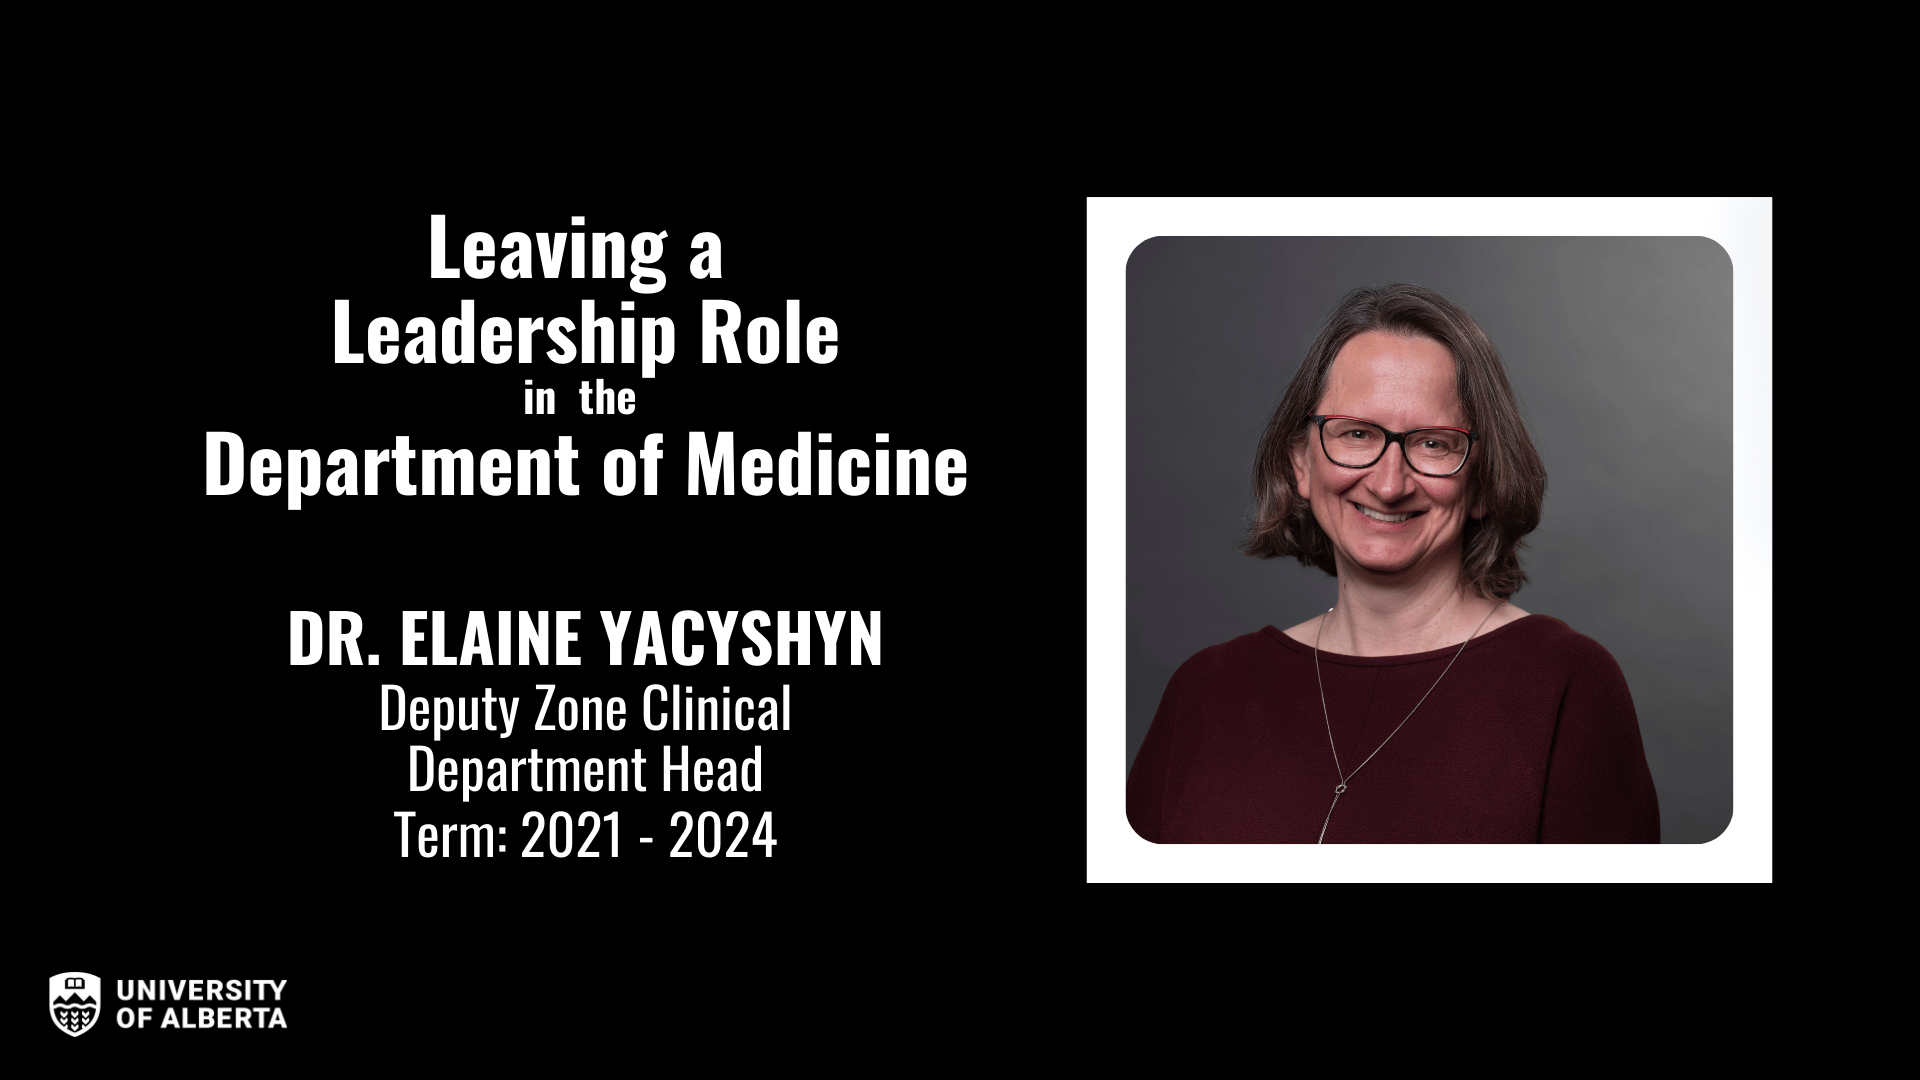 Dr. Elaine Yacyshyn